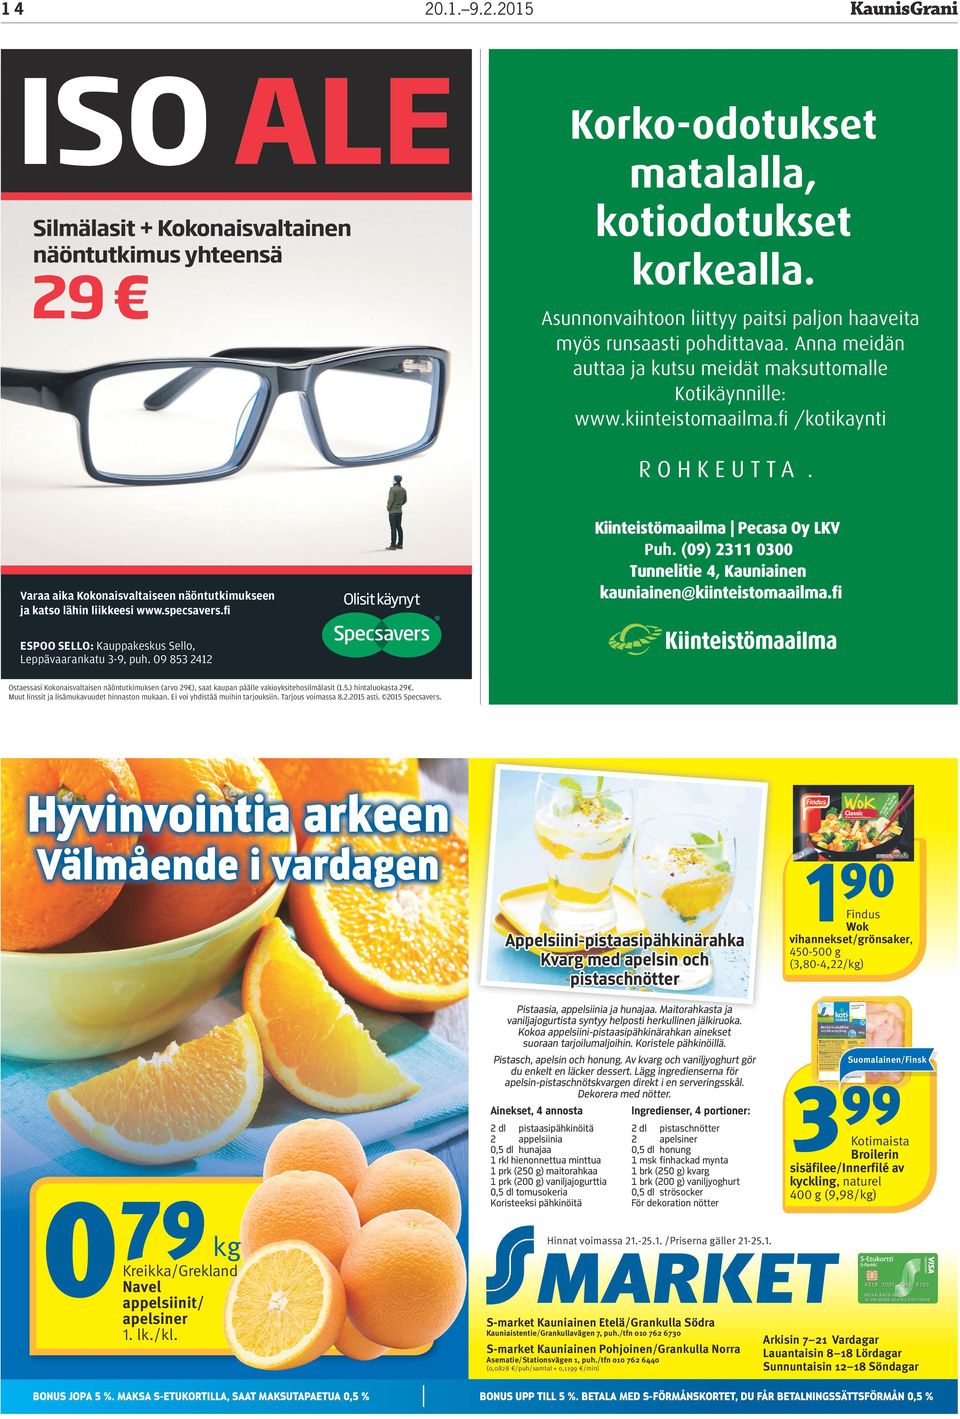 (09) 2311 0300 Tunnelitie 4, Kauniainen kauniainen@kiinteistomaailma.fi Varaa aika Kokonaisvaltaiseen näöntutkimukseen ja katso lähin liikkeesi www.specsavers.